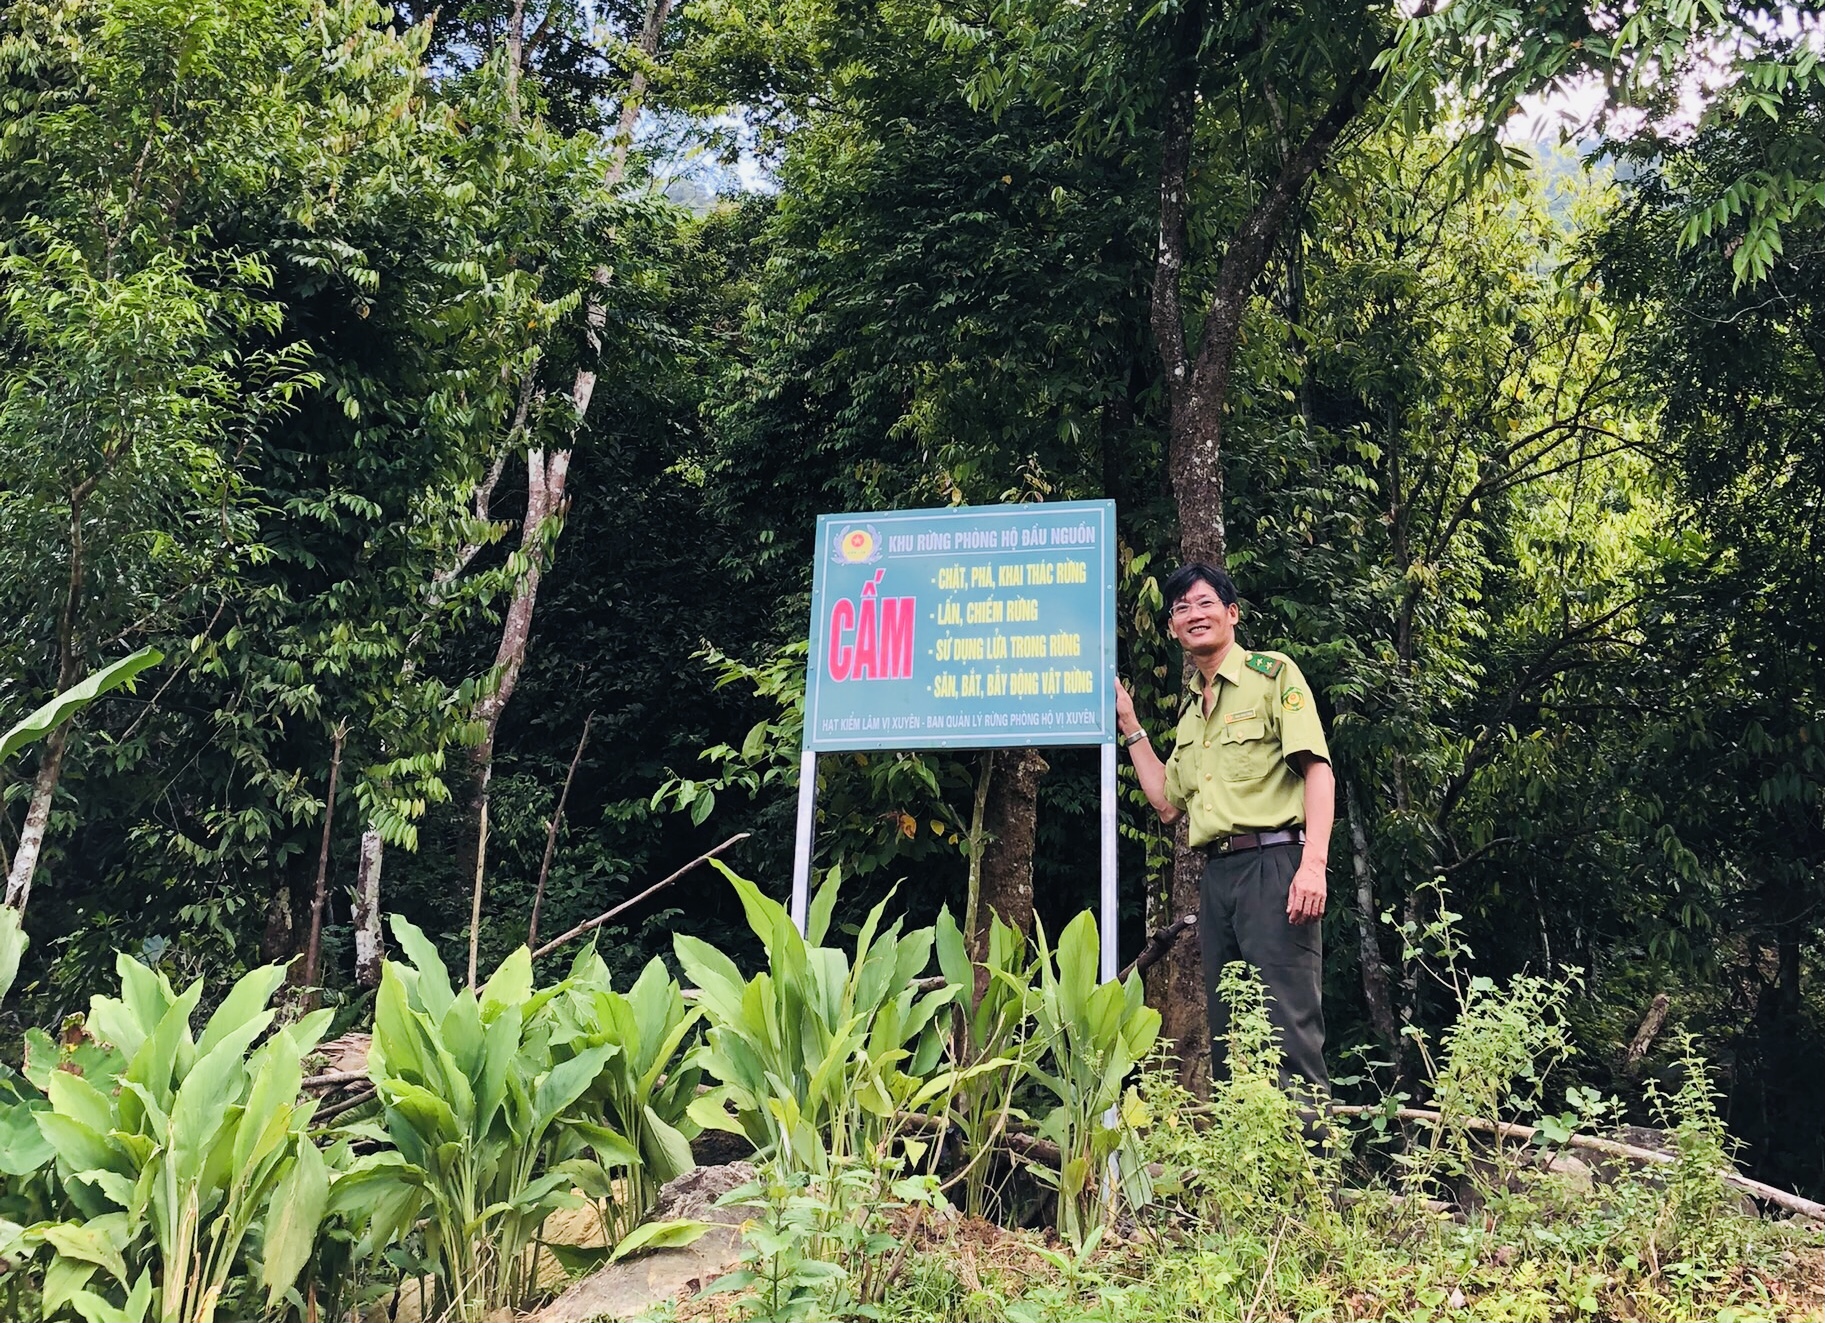 Cán bộ Hạt Kiểm lâm Vị Xuyên cắm biển báo bảo vệ rừng tại xã Kim Linh.